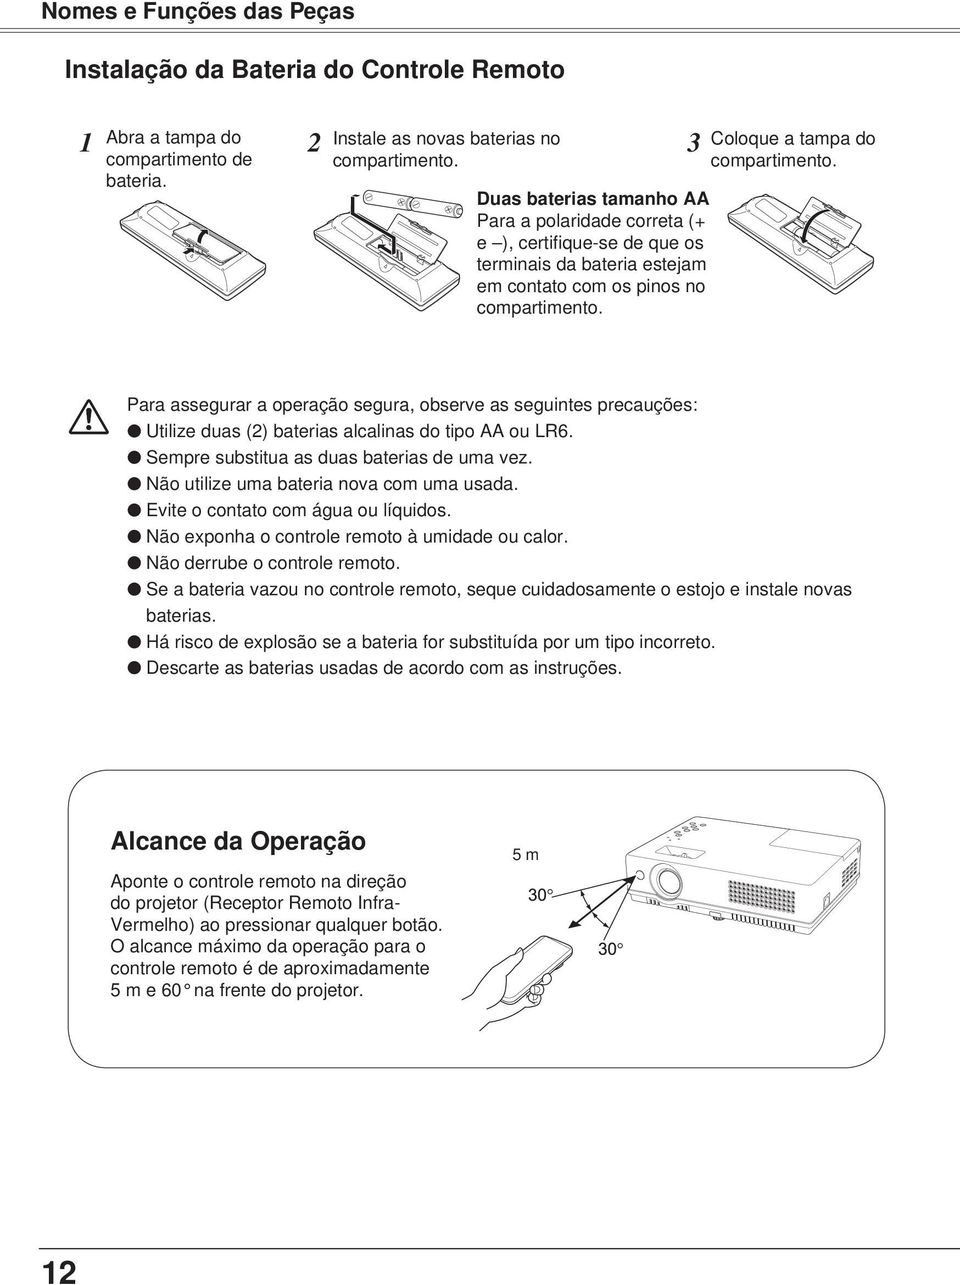 Coloque a tampa do compartimento. Para assegurar a operação segura, observe as seguintes precauções: Utilize duas (2) baterias alcalinas do tipo AA ou LR6.